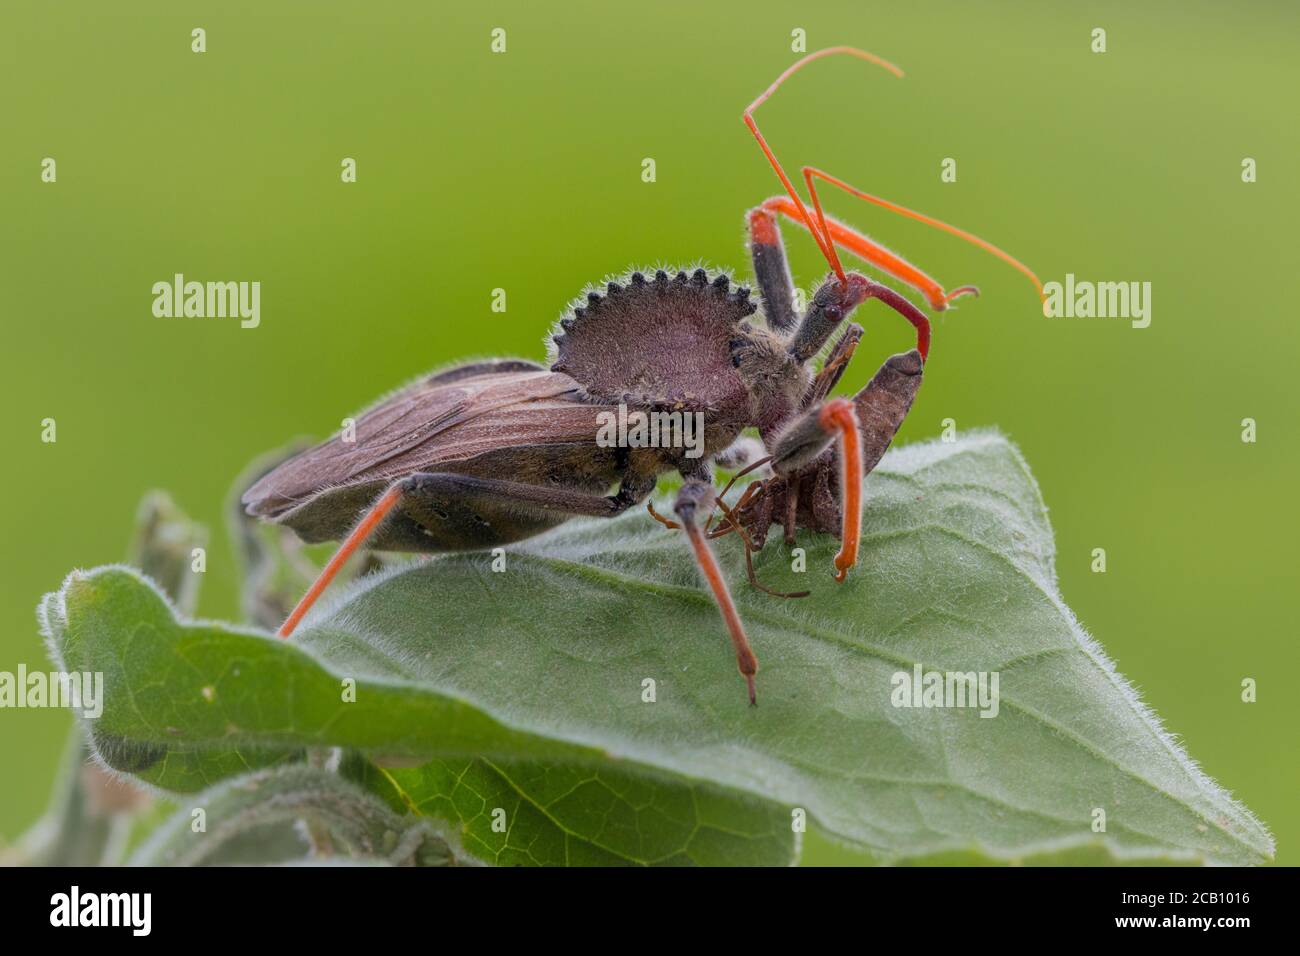 Wheel Bug (Arilus cristatus) ist eine Art von großen Assassinwanze in der Familie Reduviidae. Radfehler initiieren die Prädation, indem sie den greifen und anheften Stockfoto